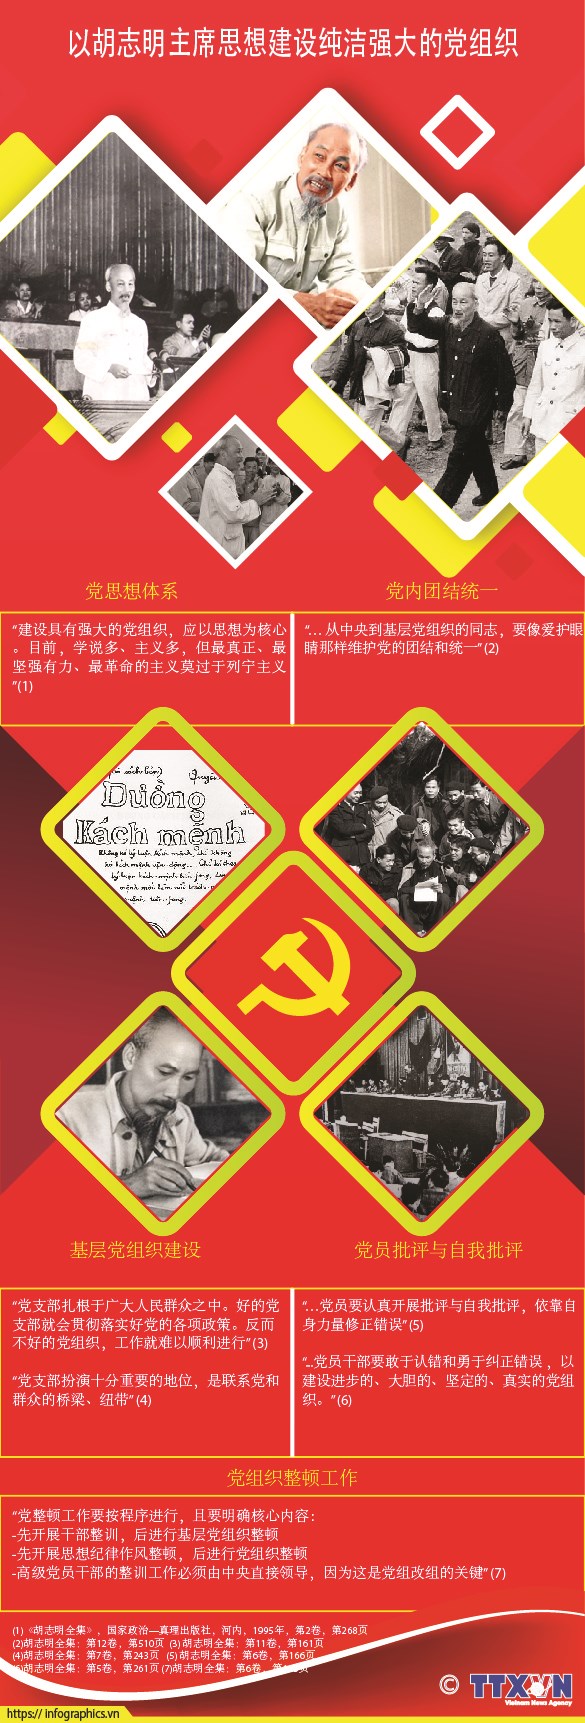 图表新闻：以胡志明主席思想建设春节强大的党组织 hinh anh 1